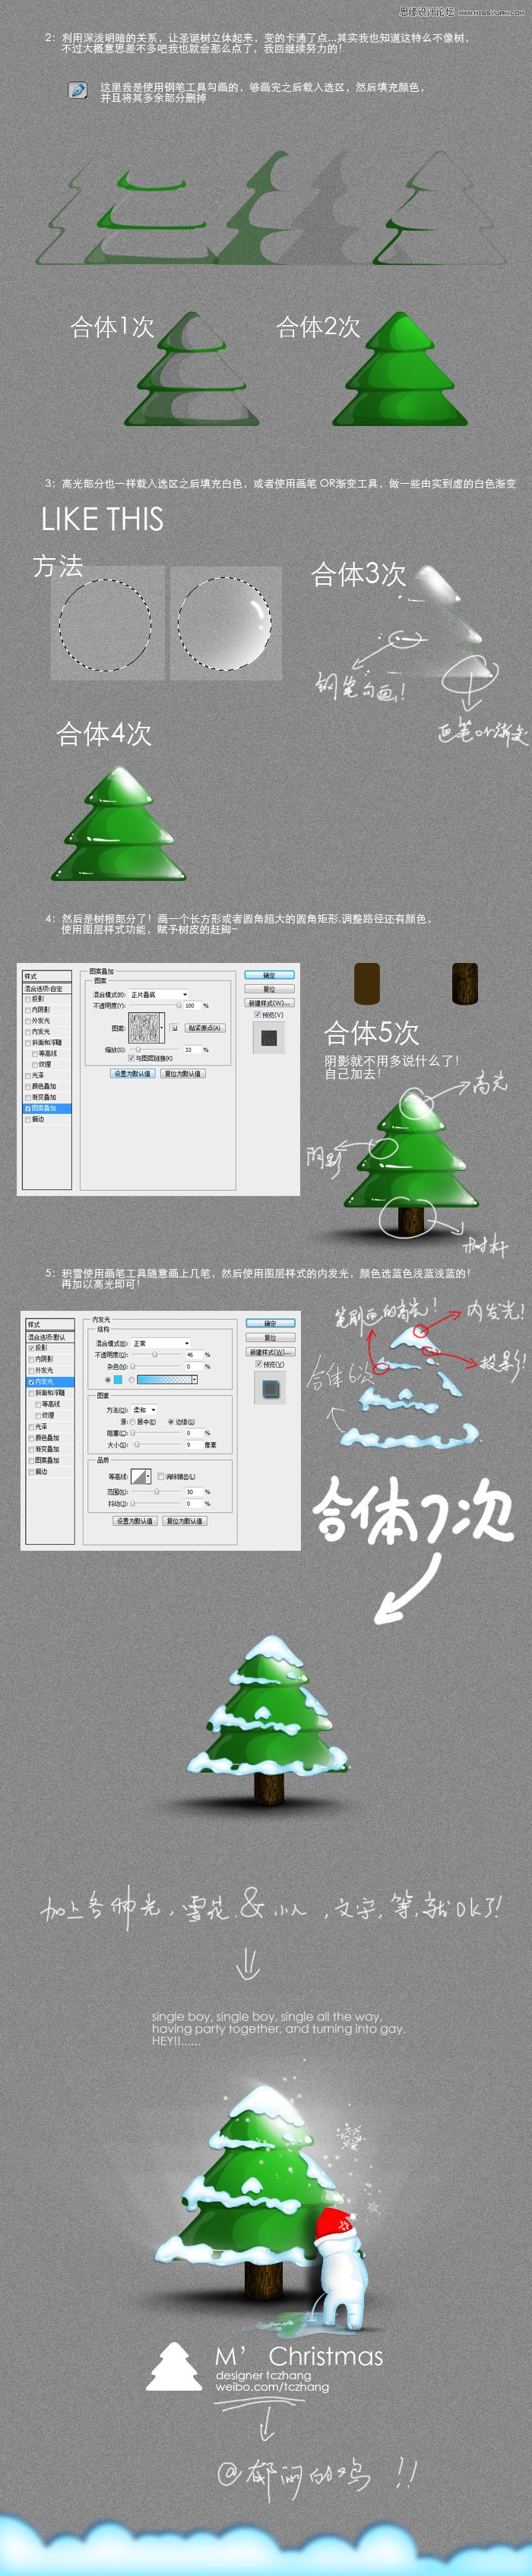 Photoshop绘制逼真立体效果的圣诞树,PS教程,图老师教程网